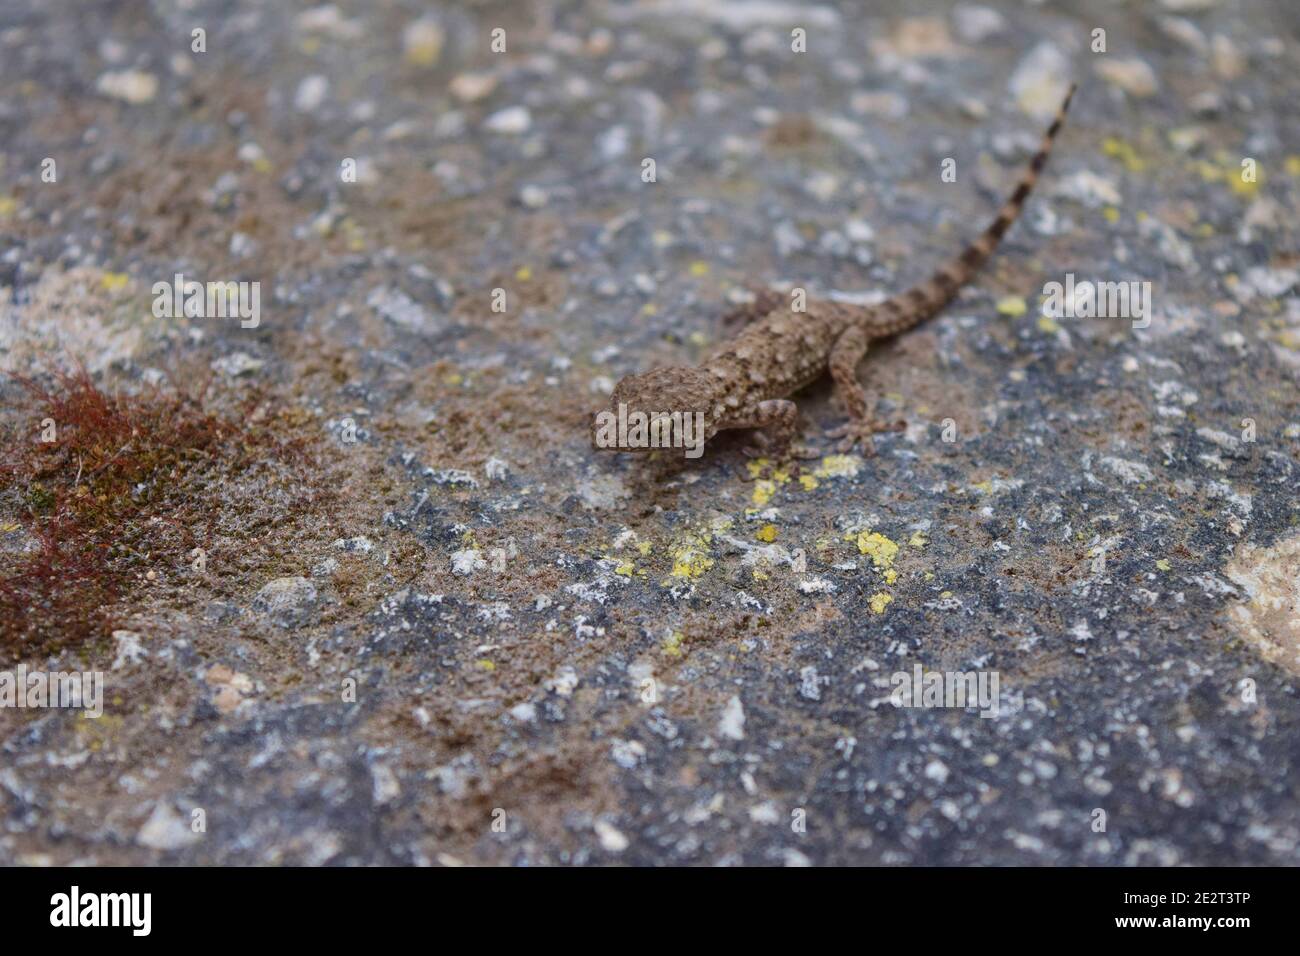 Photo en grand angle d'un gecko de mur commun qui marche une pierre couverte de blanc et jaune Banque D'Images